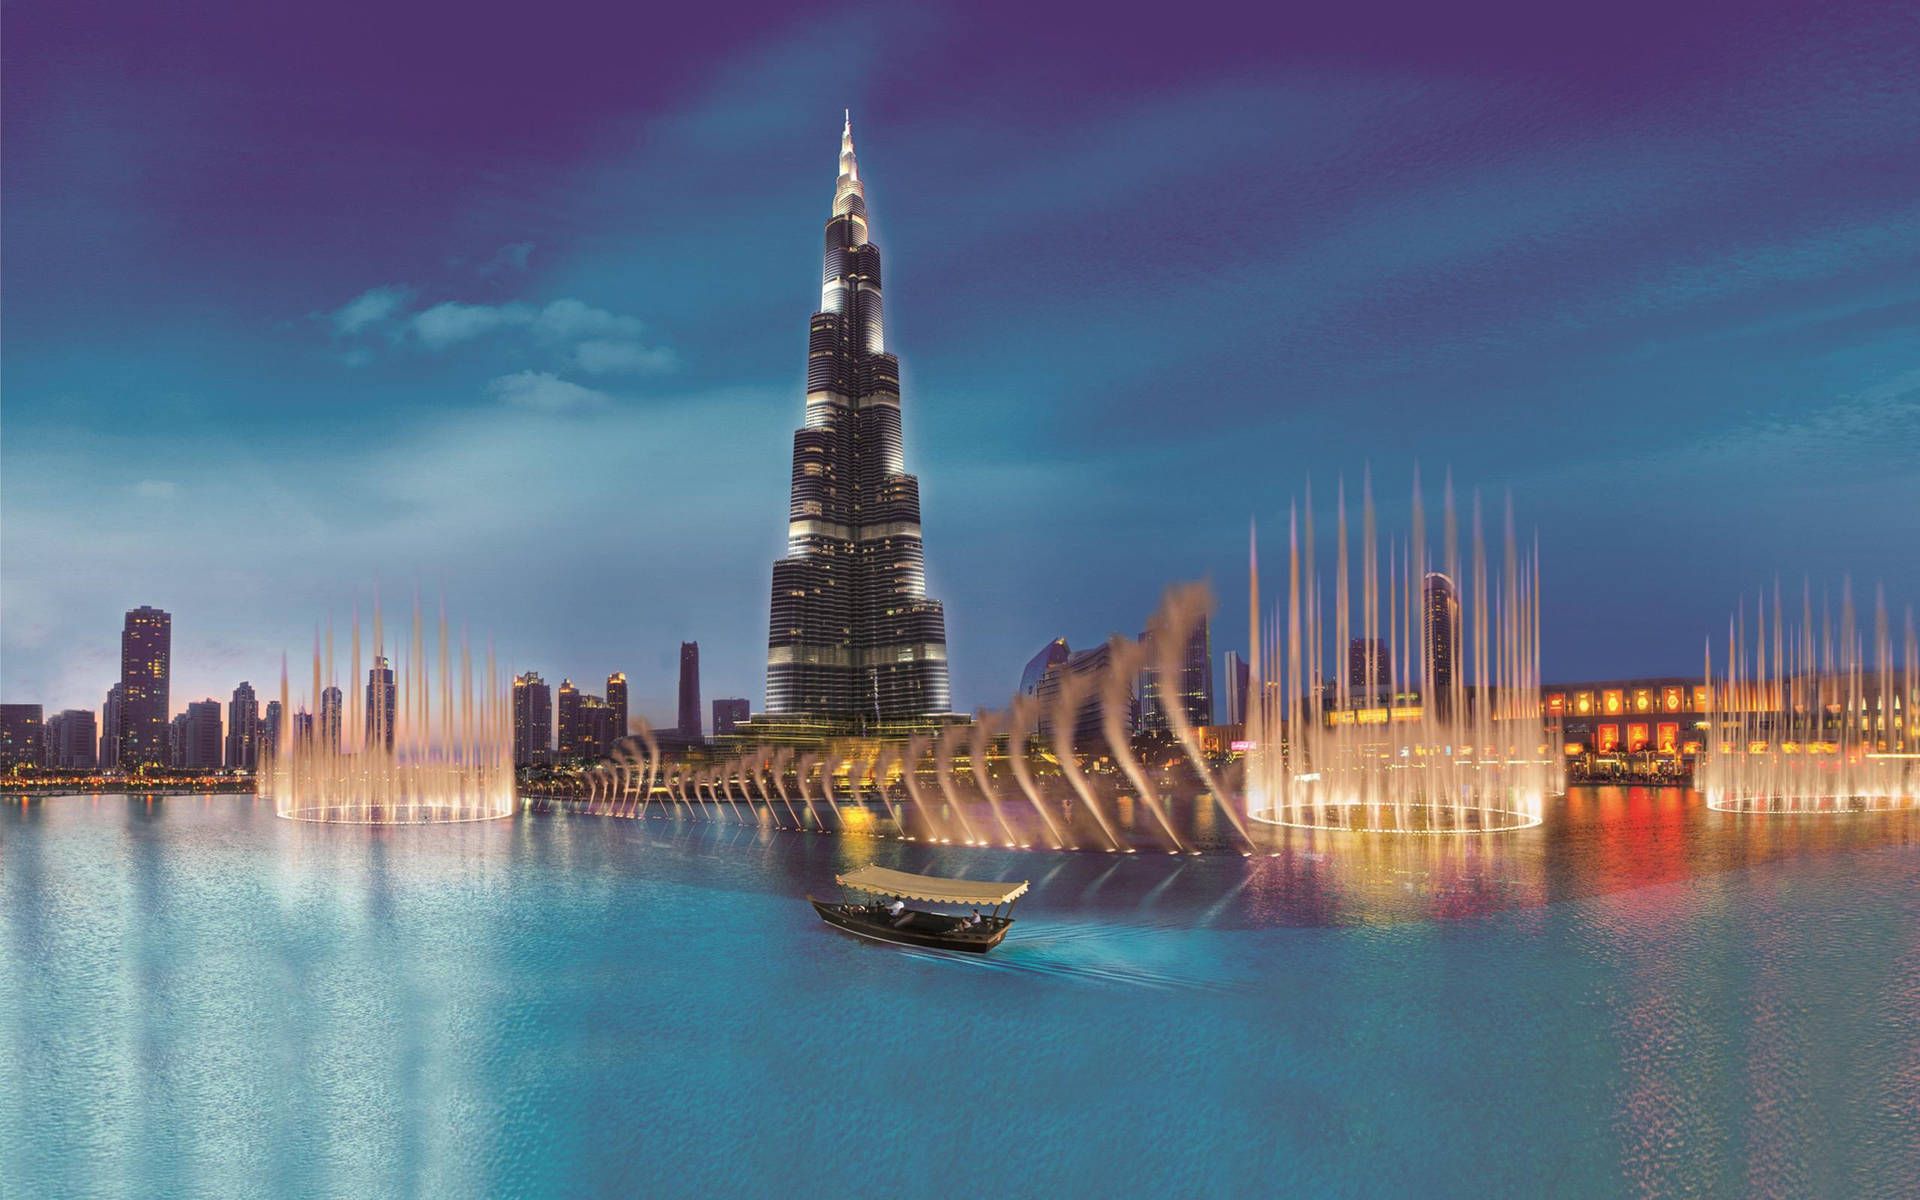  Dubai Hintergrundbild 1920x1200. Free Dubai 4k Wallpaper Downloads, Dubai 4k Wallpaper for FREE